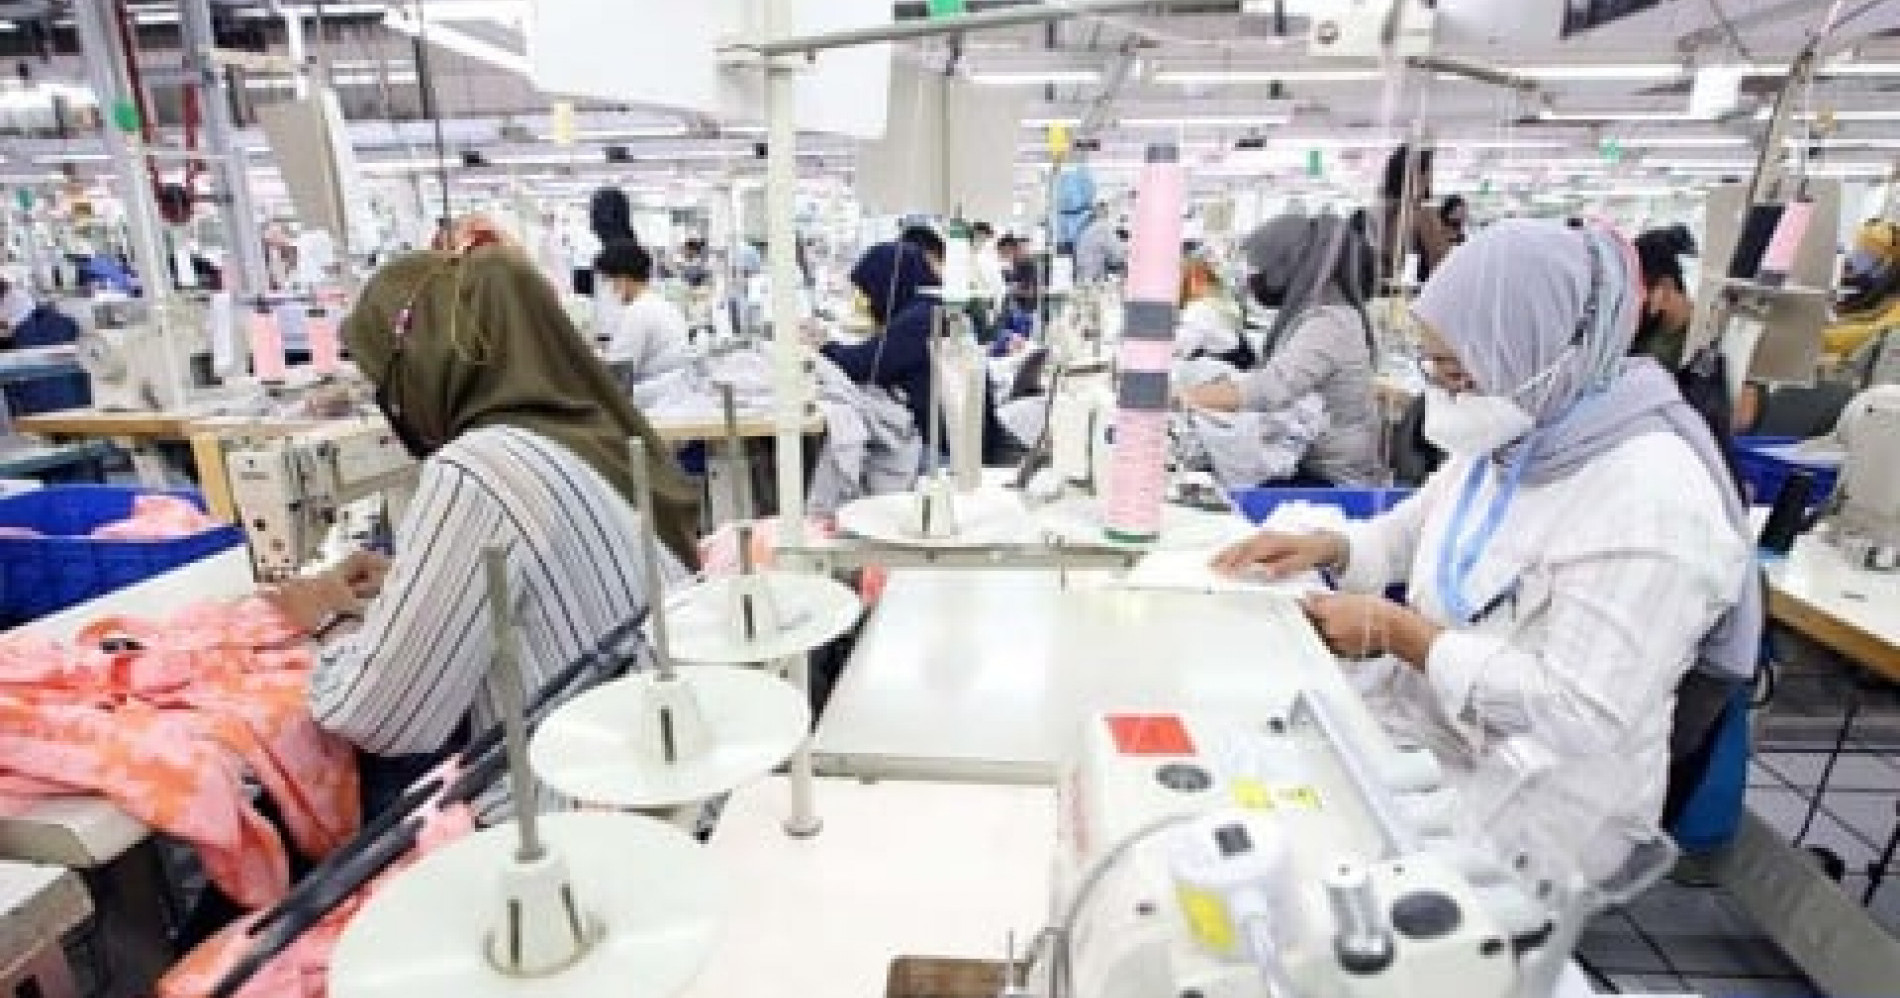 Beberapa karyawan sedang memproduksi pakaian. (Sumber gambar: Bisnis/Rachman)